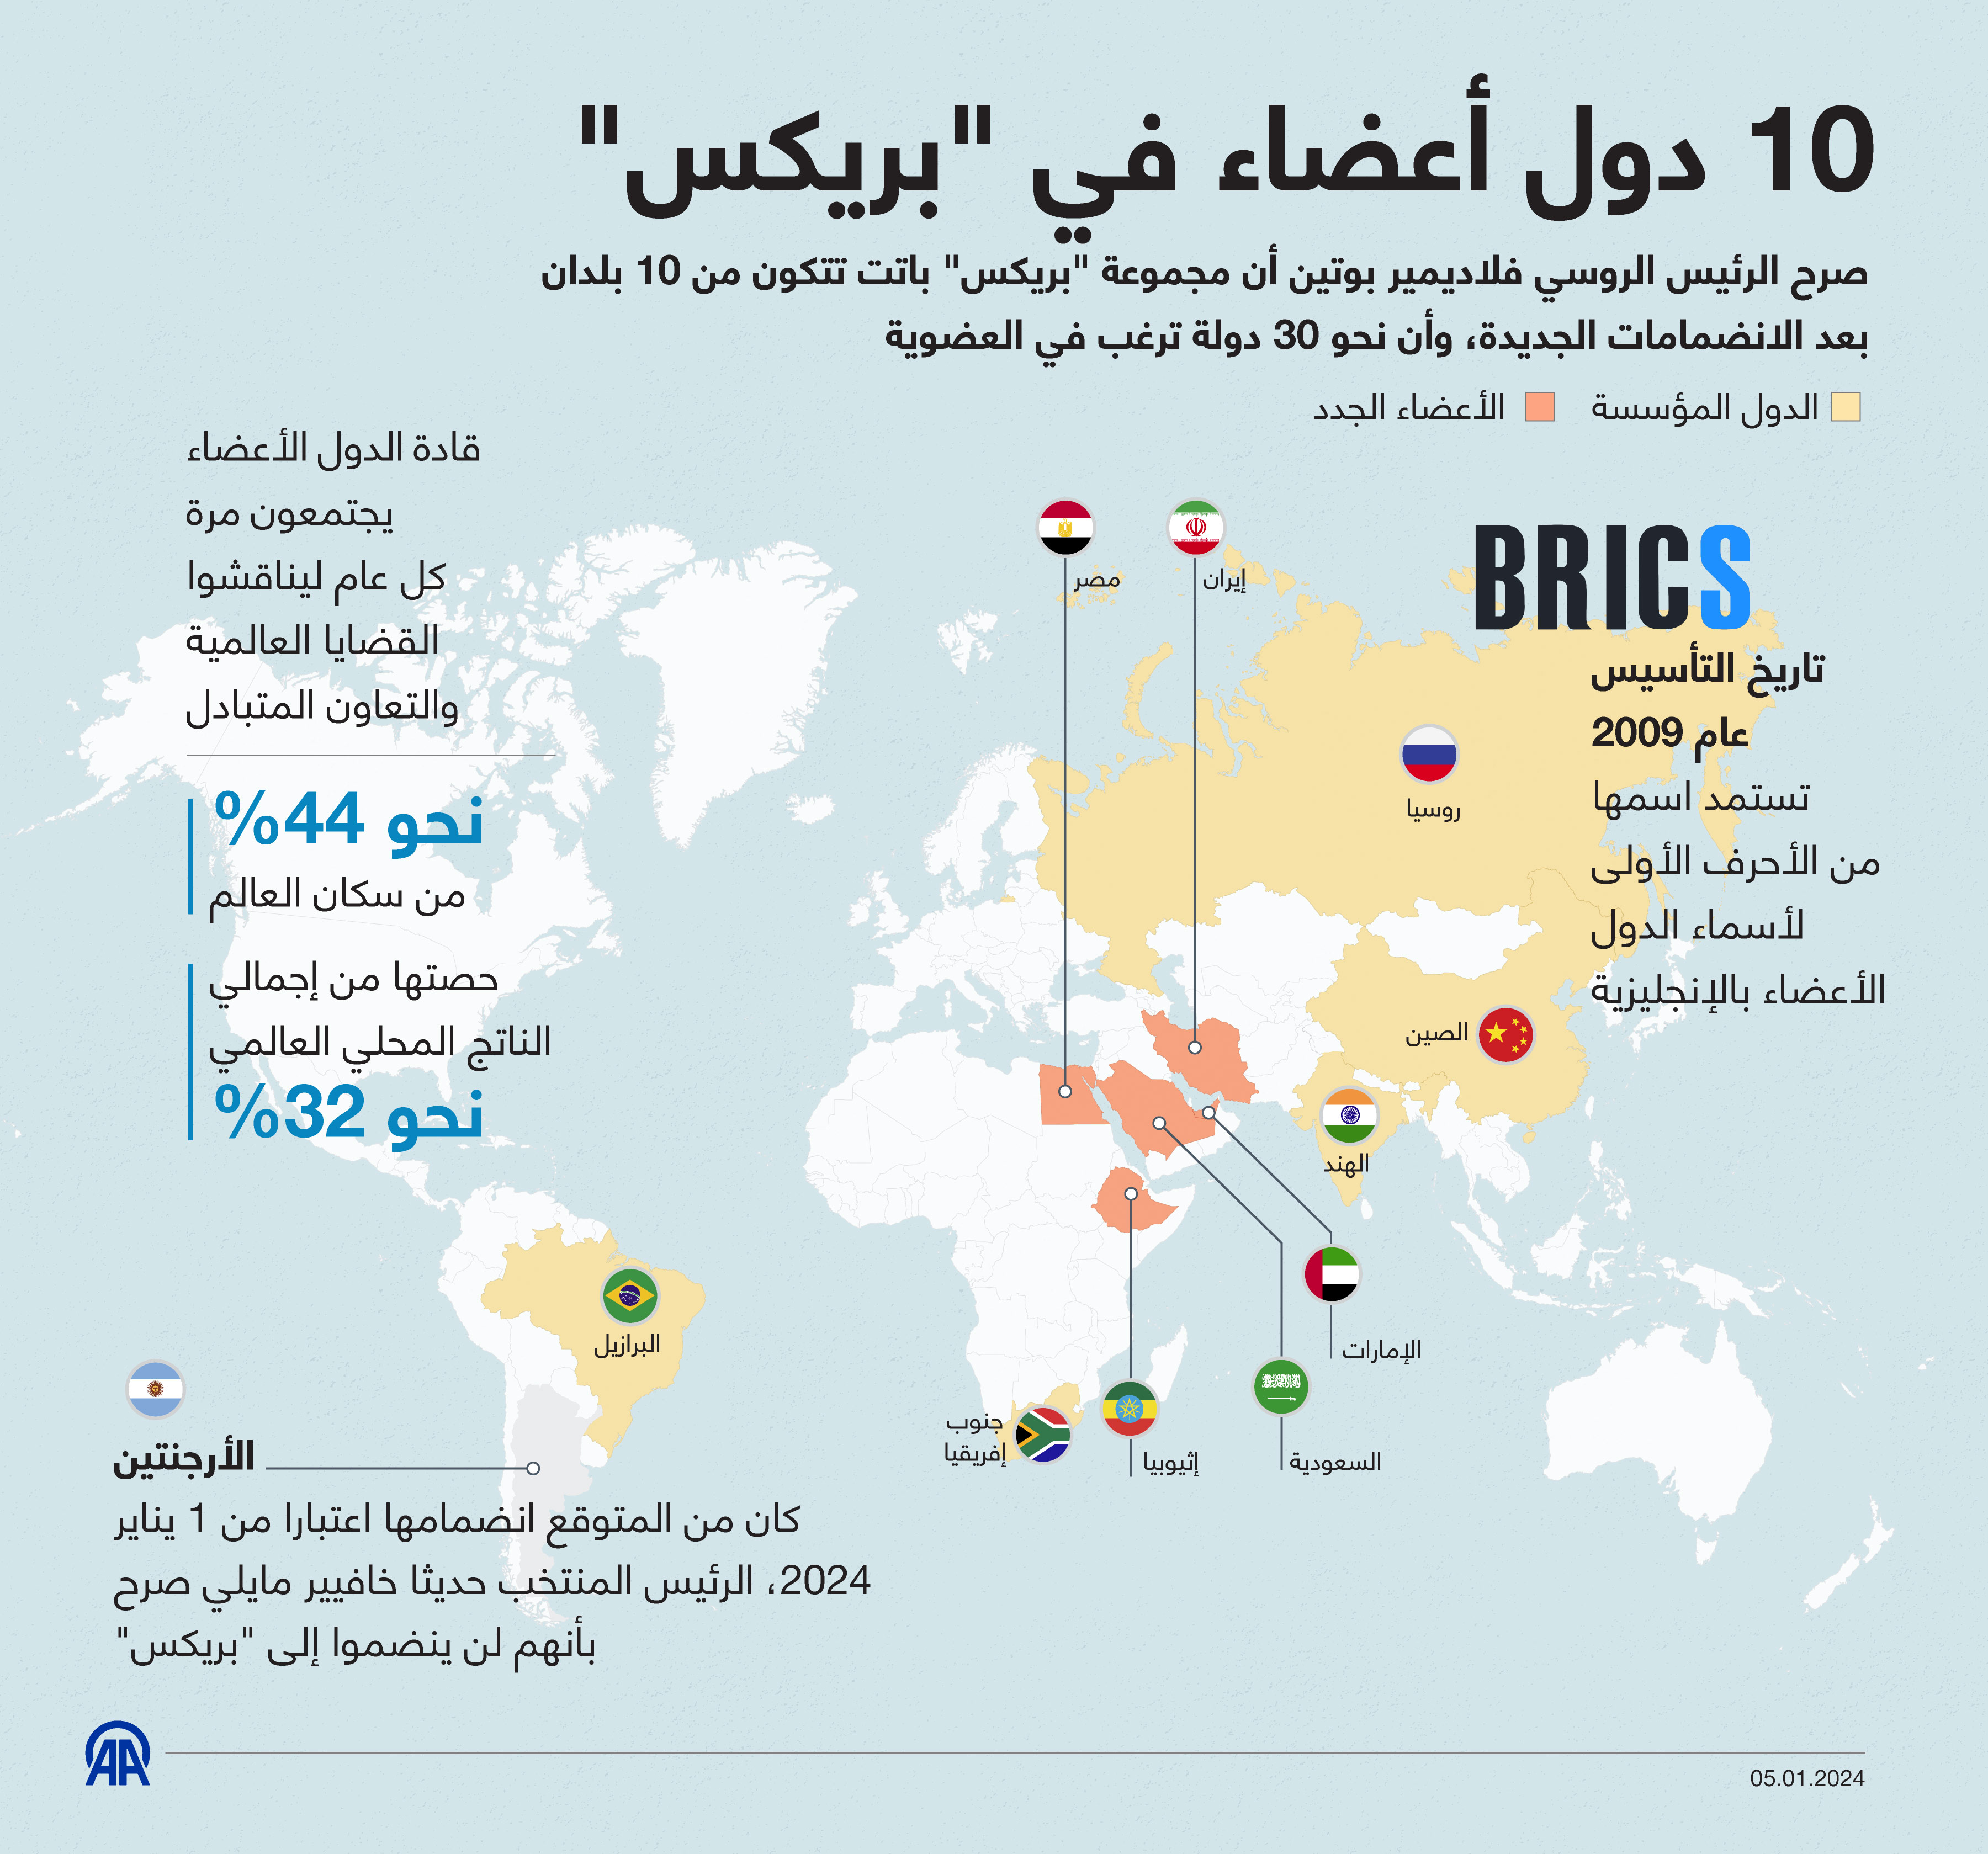 10 دول أعضاء في "بريكس"